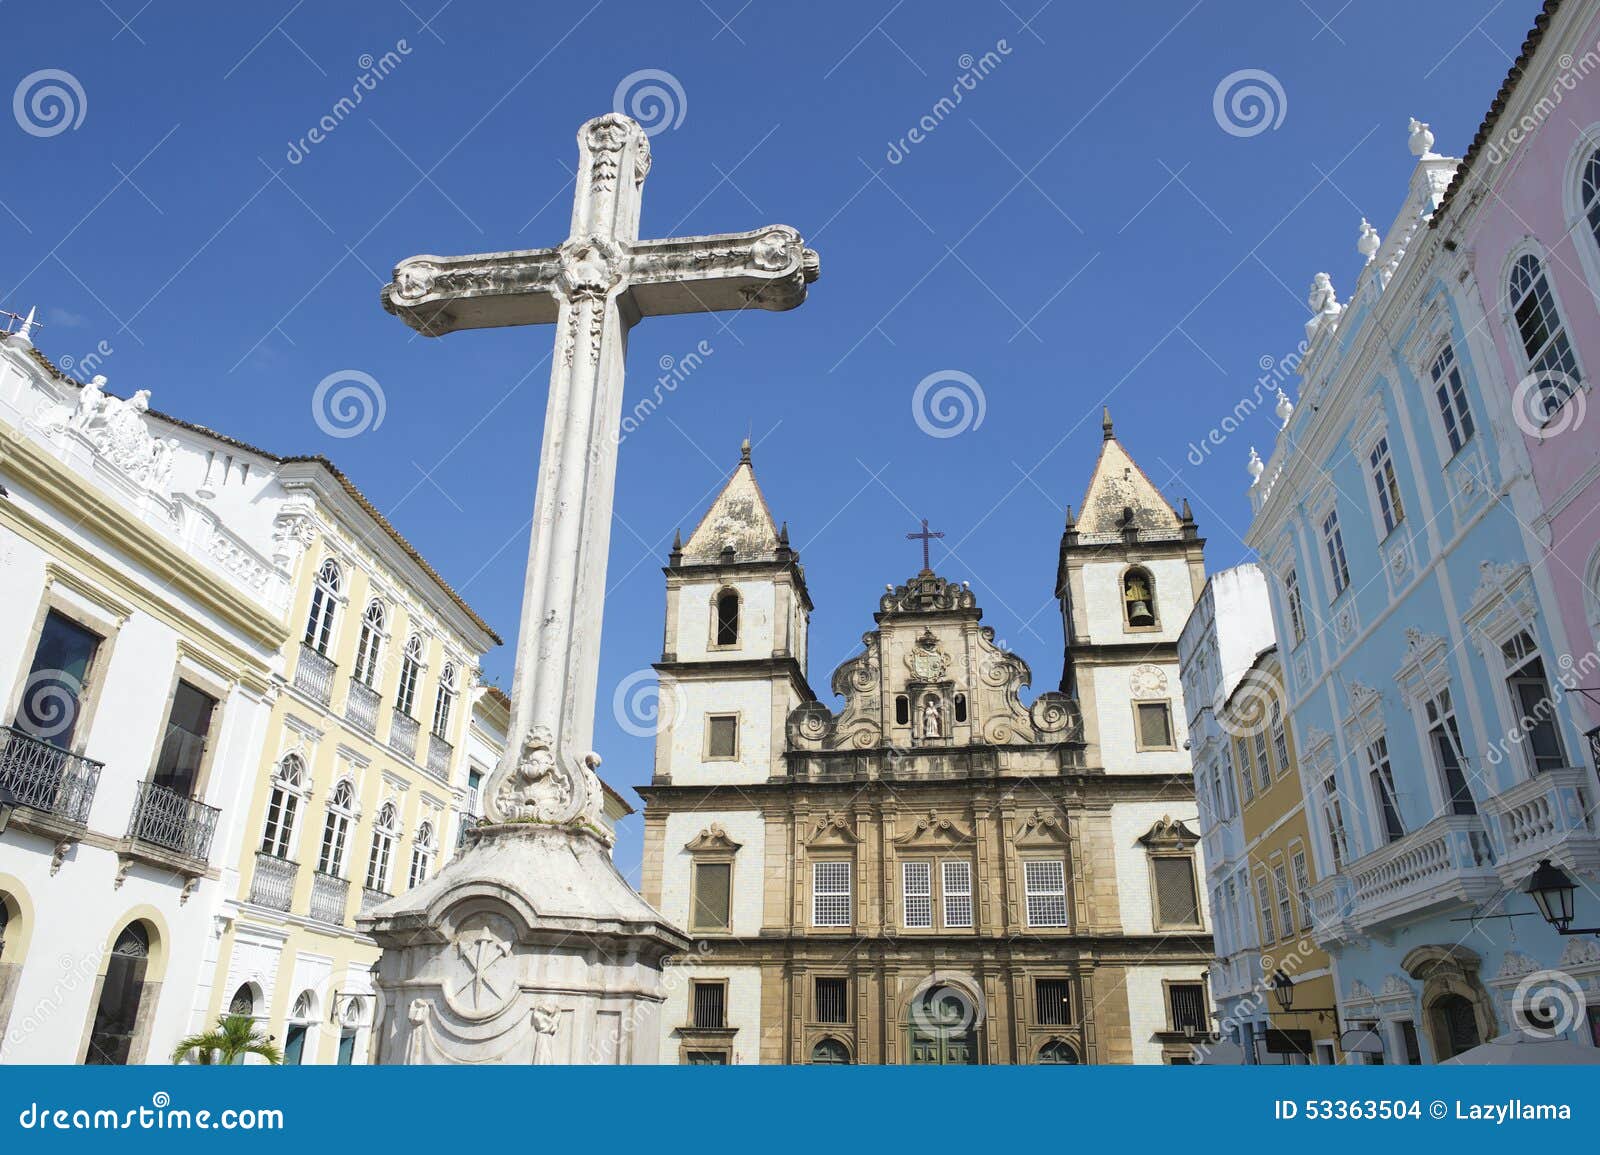 colonial christian cross in pelourinho salvador bahia brazil